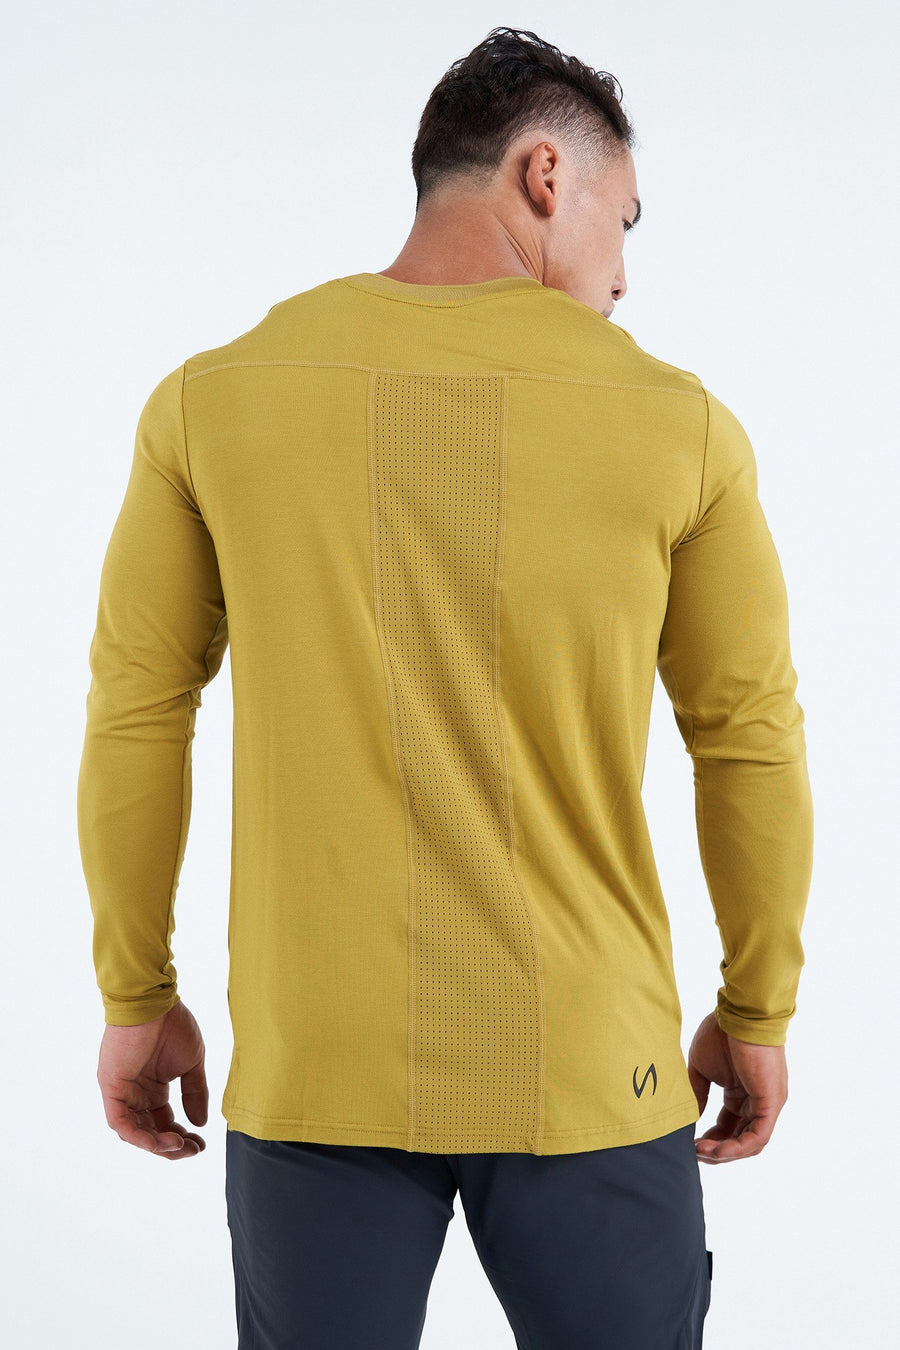 TLF League Air-Flex Long Sleeve | Men’s Long Sleeve Workout Shirt 2